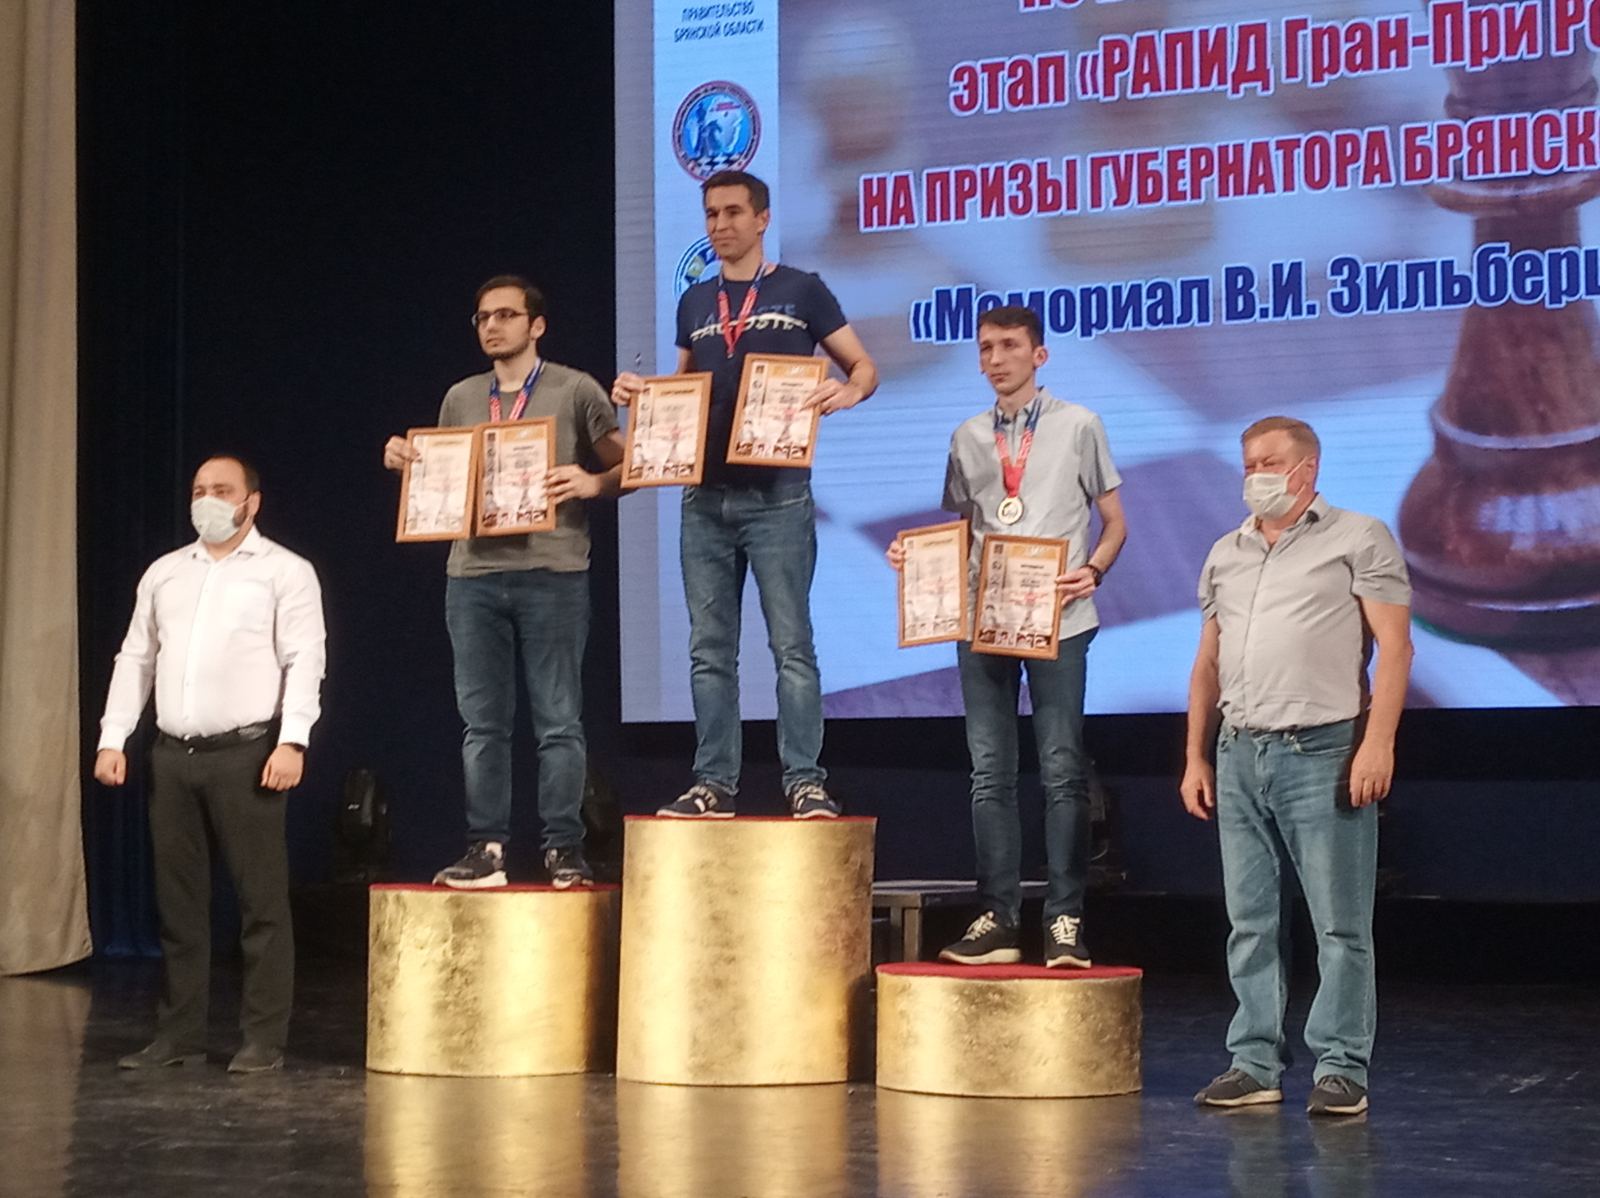 Подведены итоги в категориях А и В Всероссийских соревнования по быстрым шахматам в Брянске